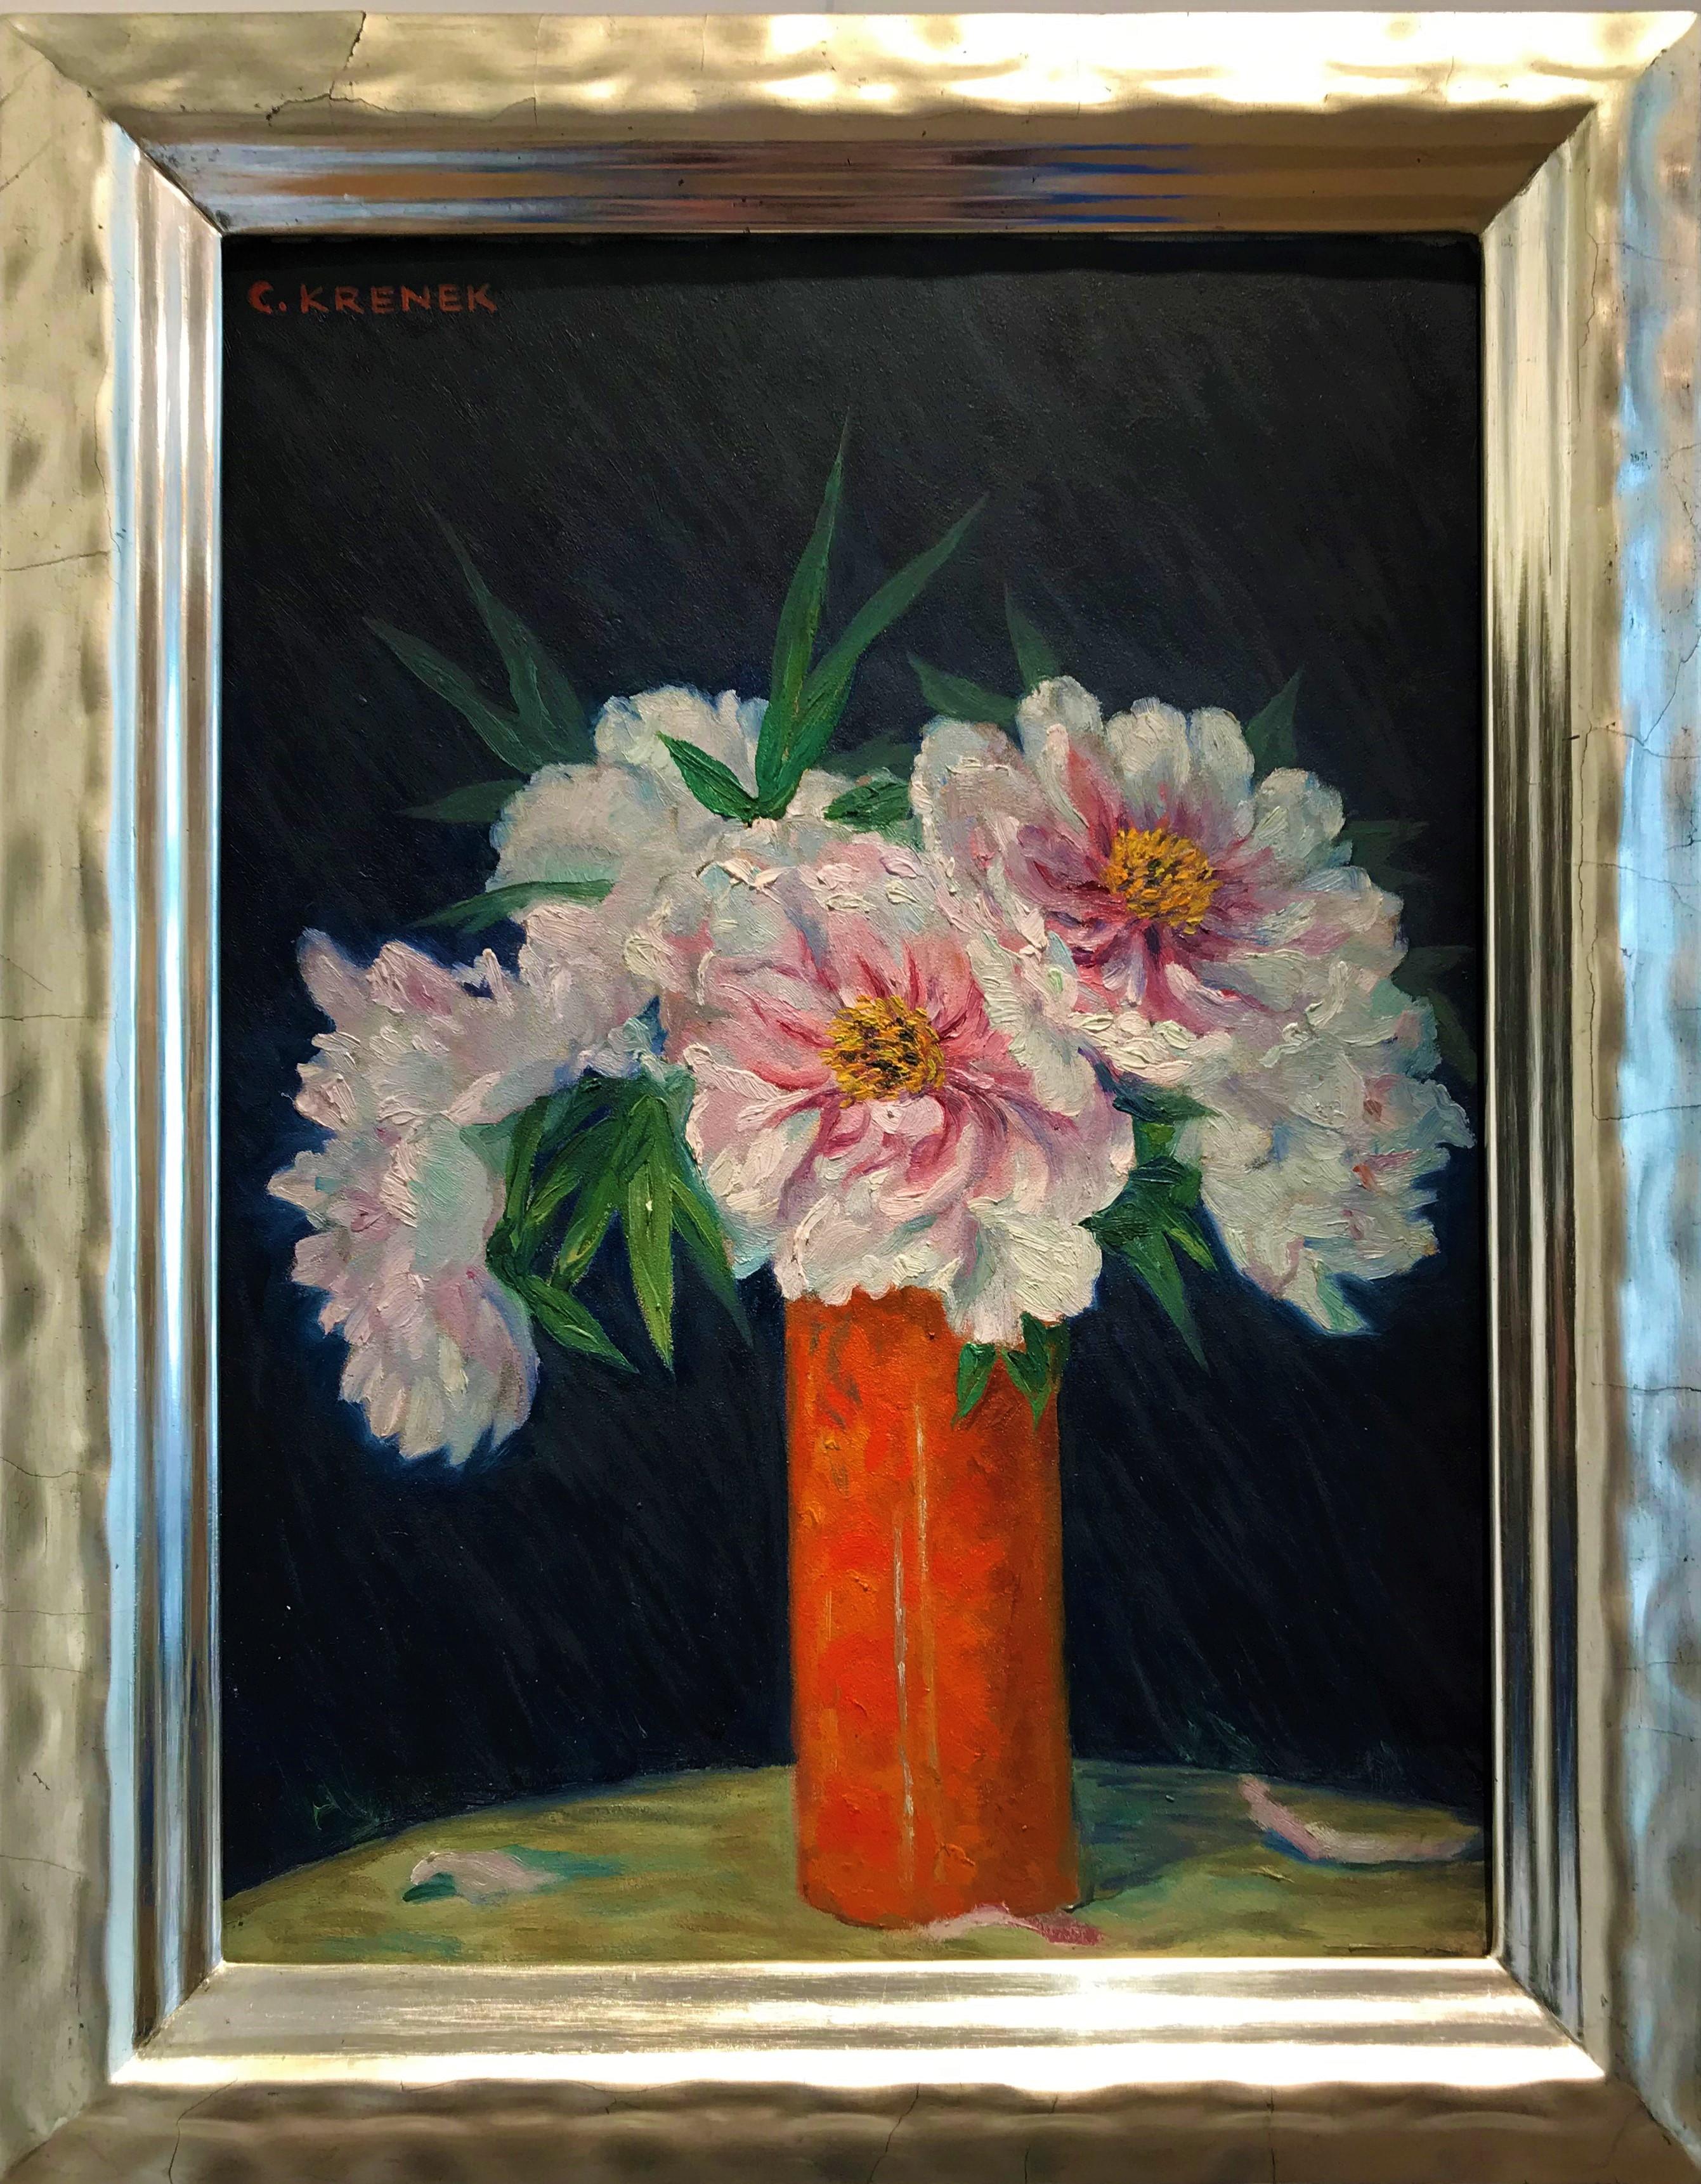 Still-life with flowers - oil/cardboard, white peonies, orange, modern, Vienna - Painting by Carl Krenek